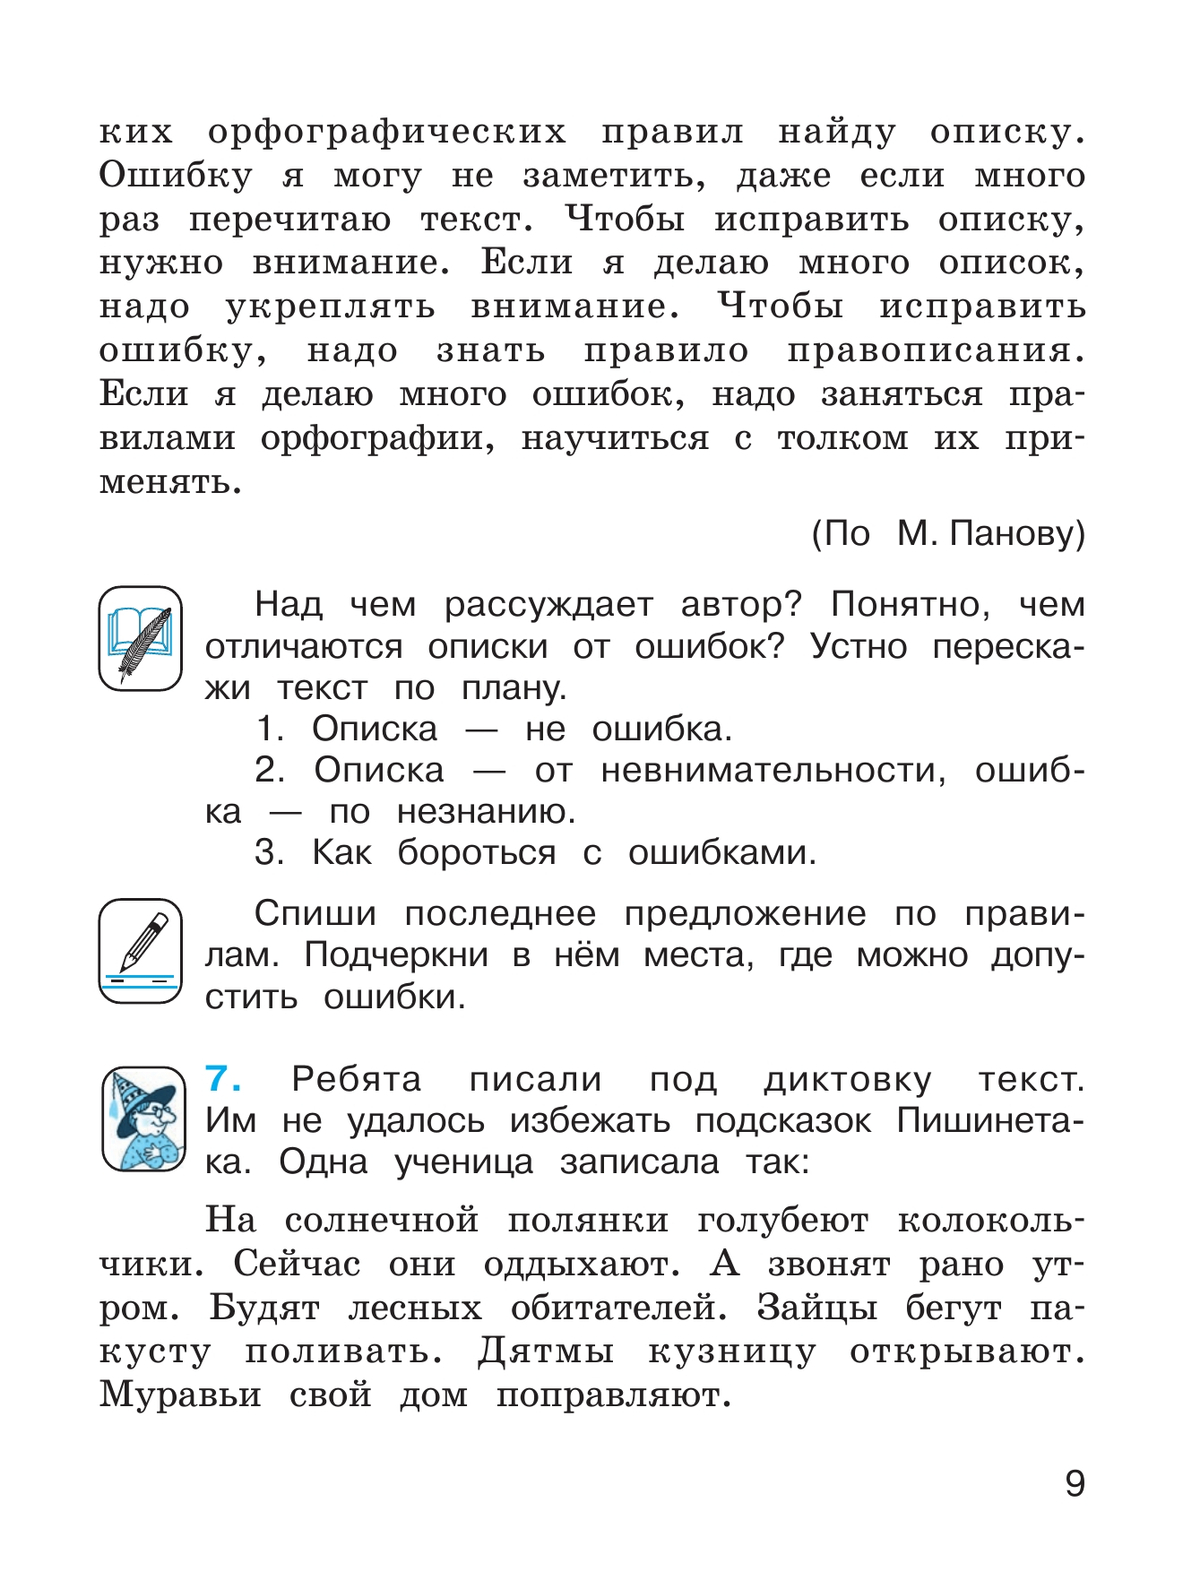 Русский язык. 4 класс. Учебник. В 2 ч. Часть 1 2